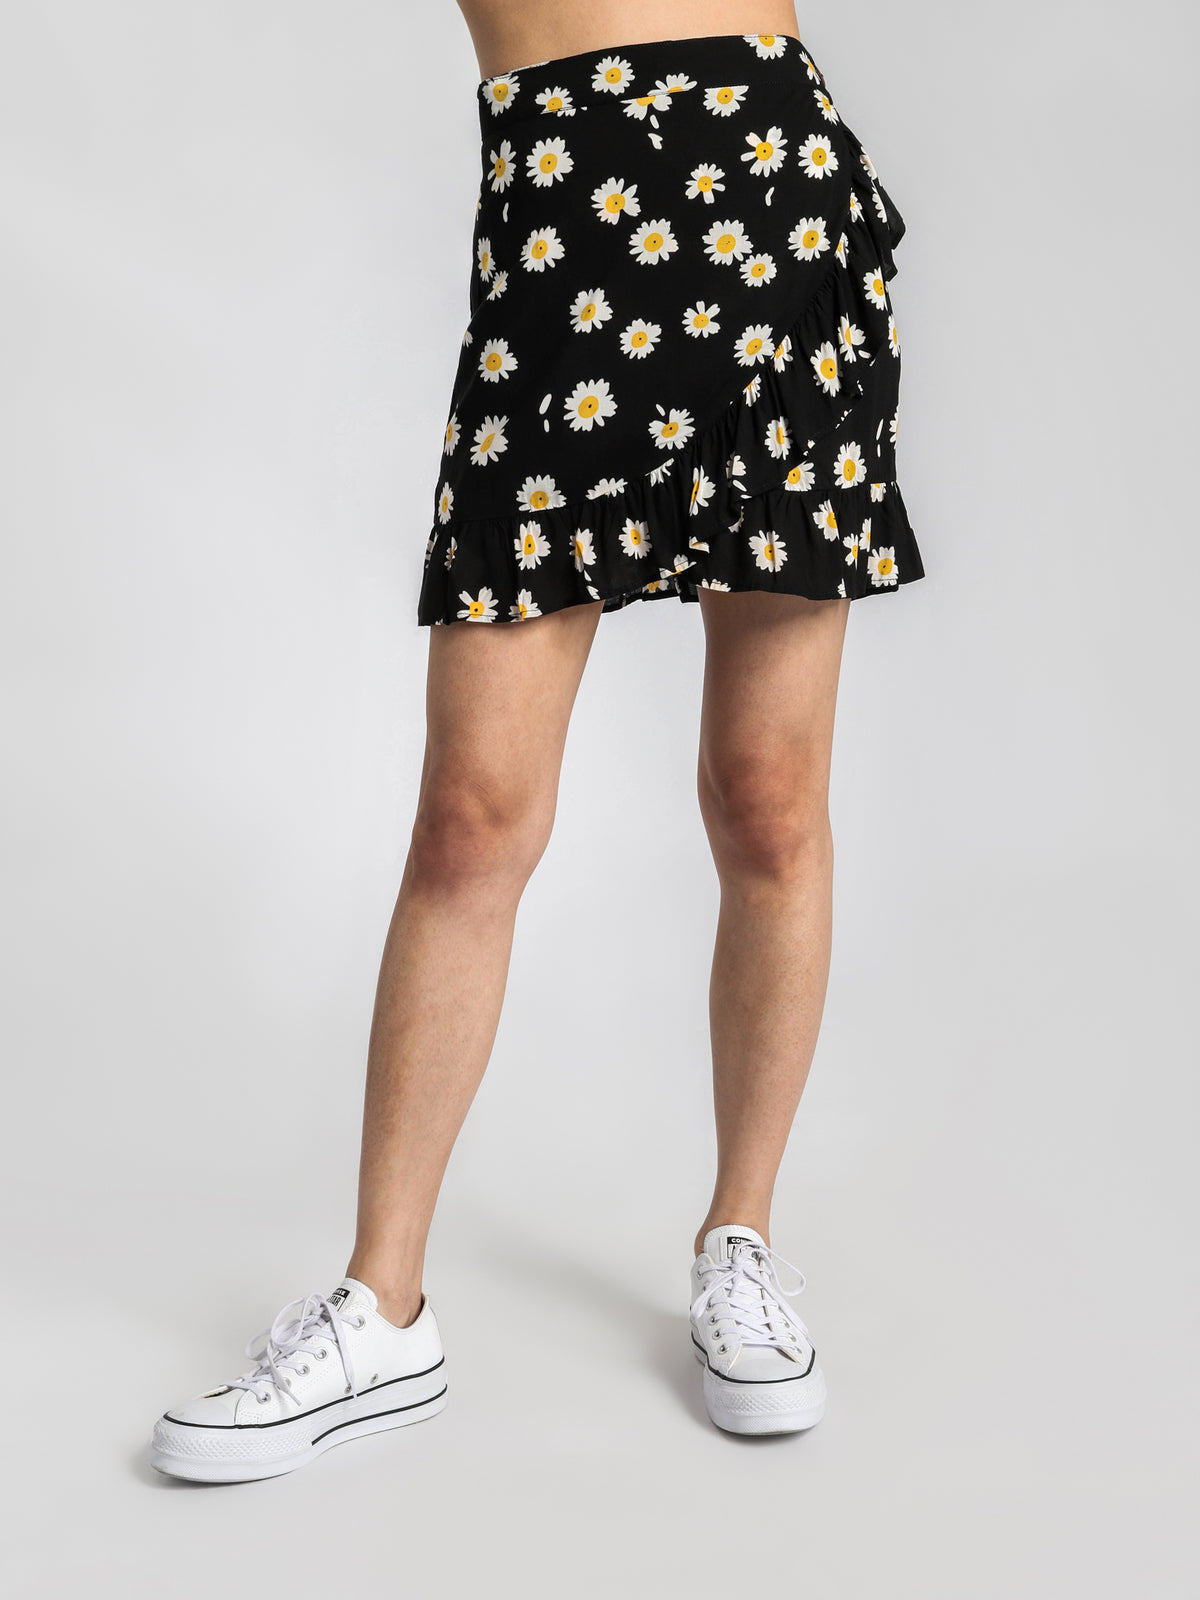 Capri Skirt in Bellis Floral Print